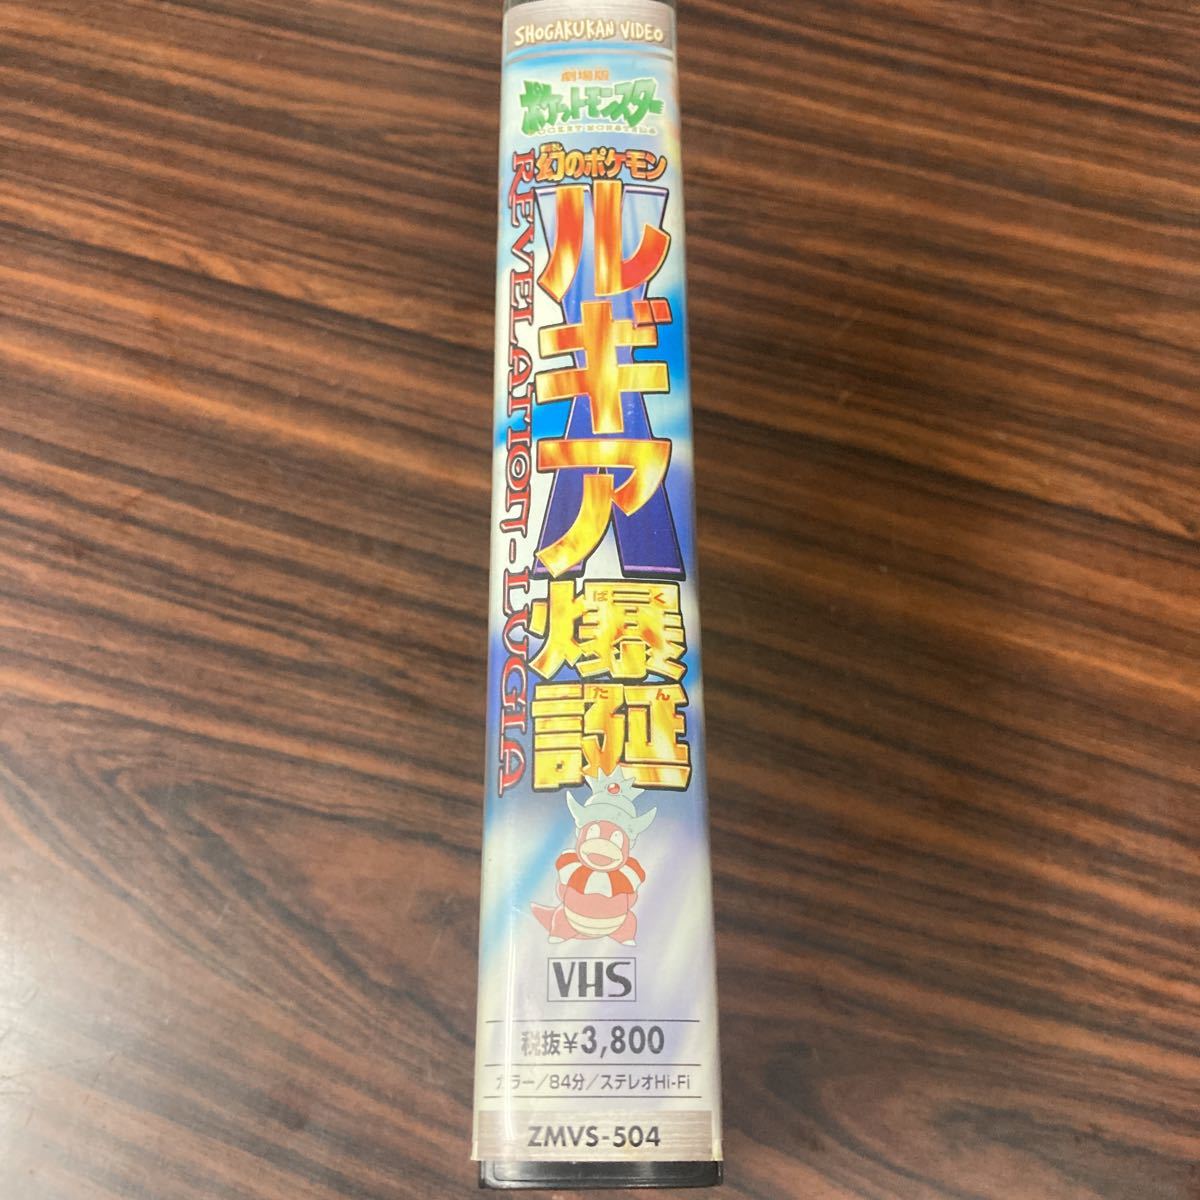 VHS 劇場版 ポケットモンスター 幻のポケモン ルギア爆誕 アニメ